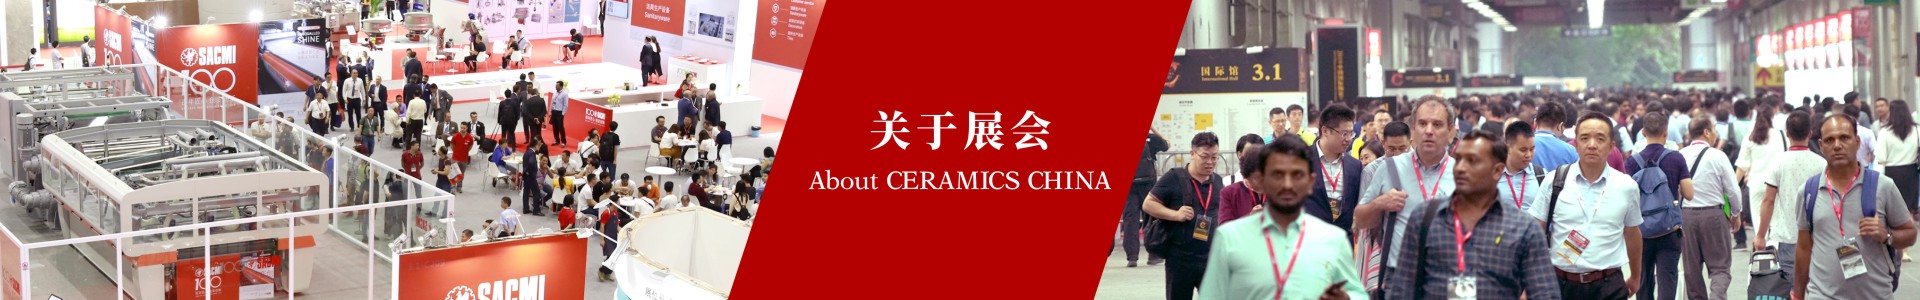 http://www.ceramicschina.com.cn/upload/admin/20200819/202008191729133279.jpg